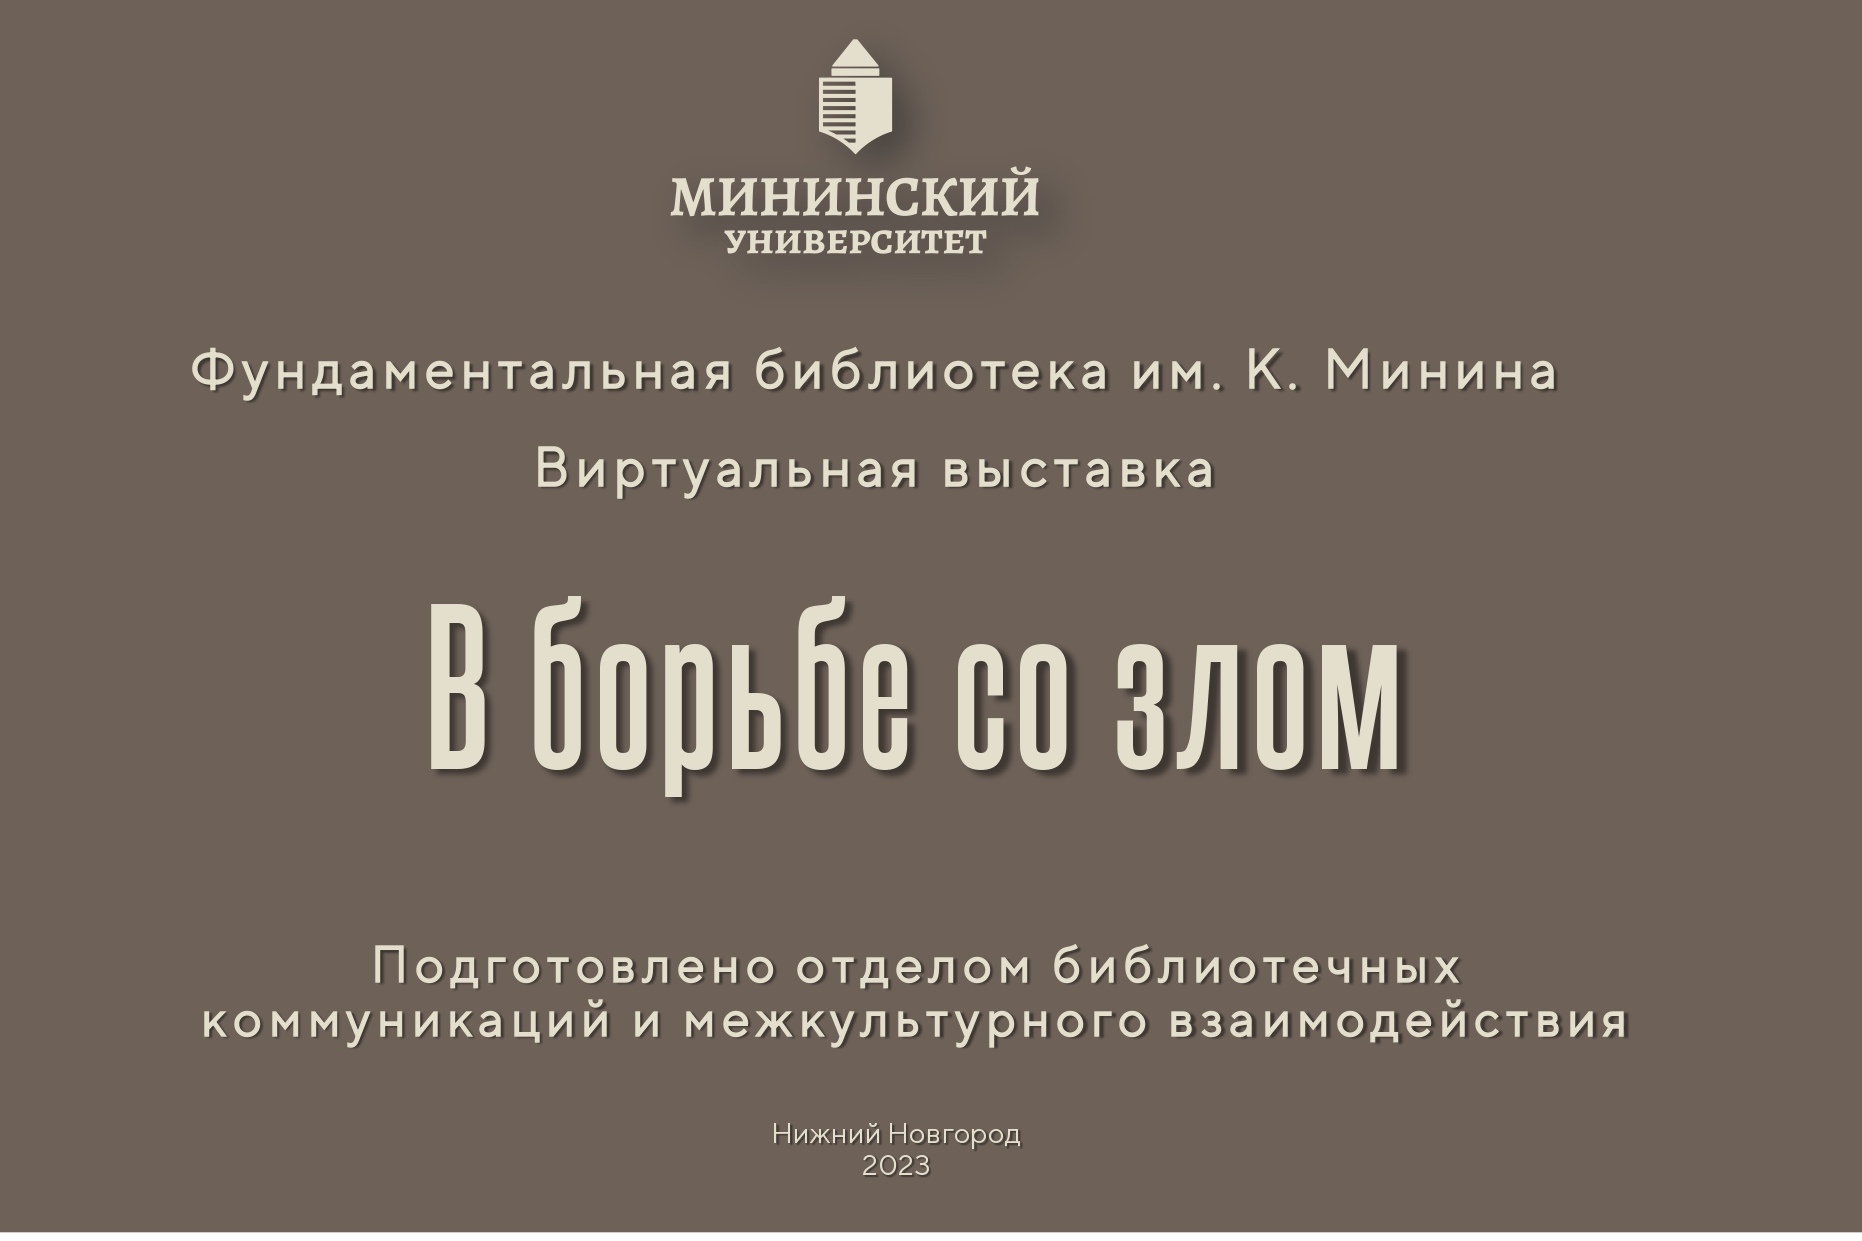 Библиотека Мининского университета приглашает на виртуальную выставку